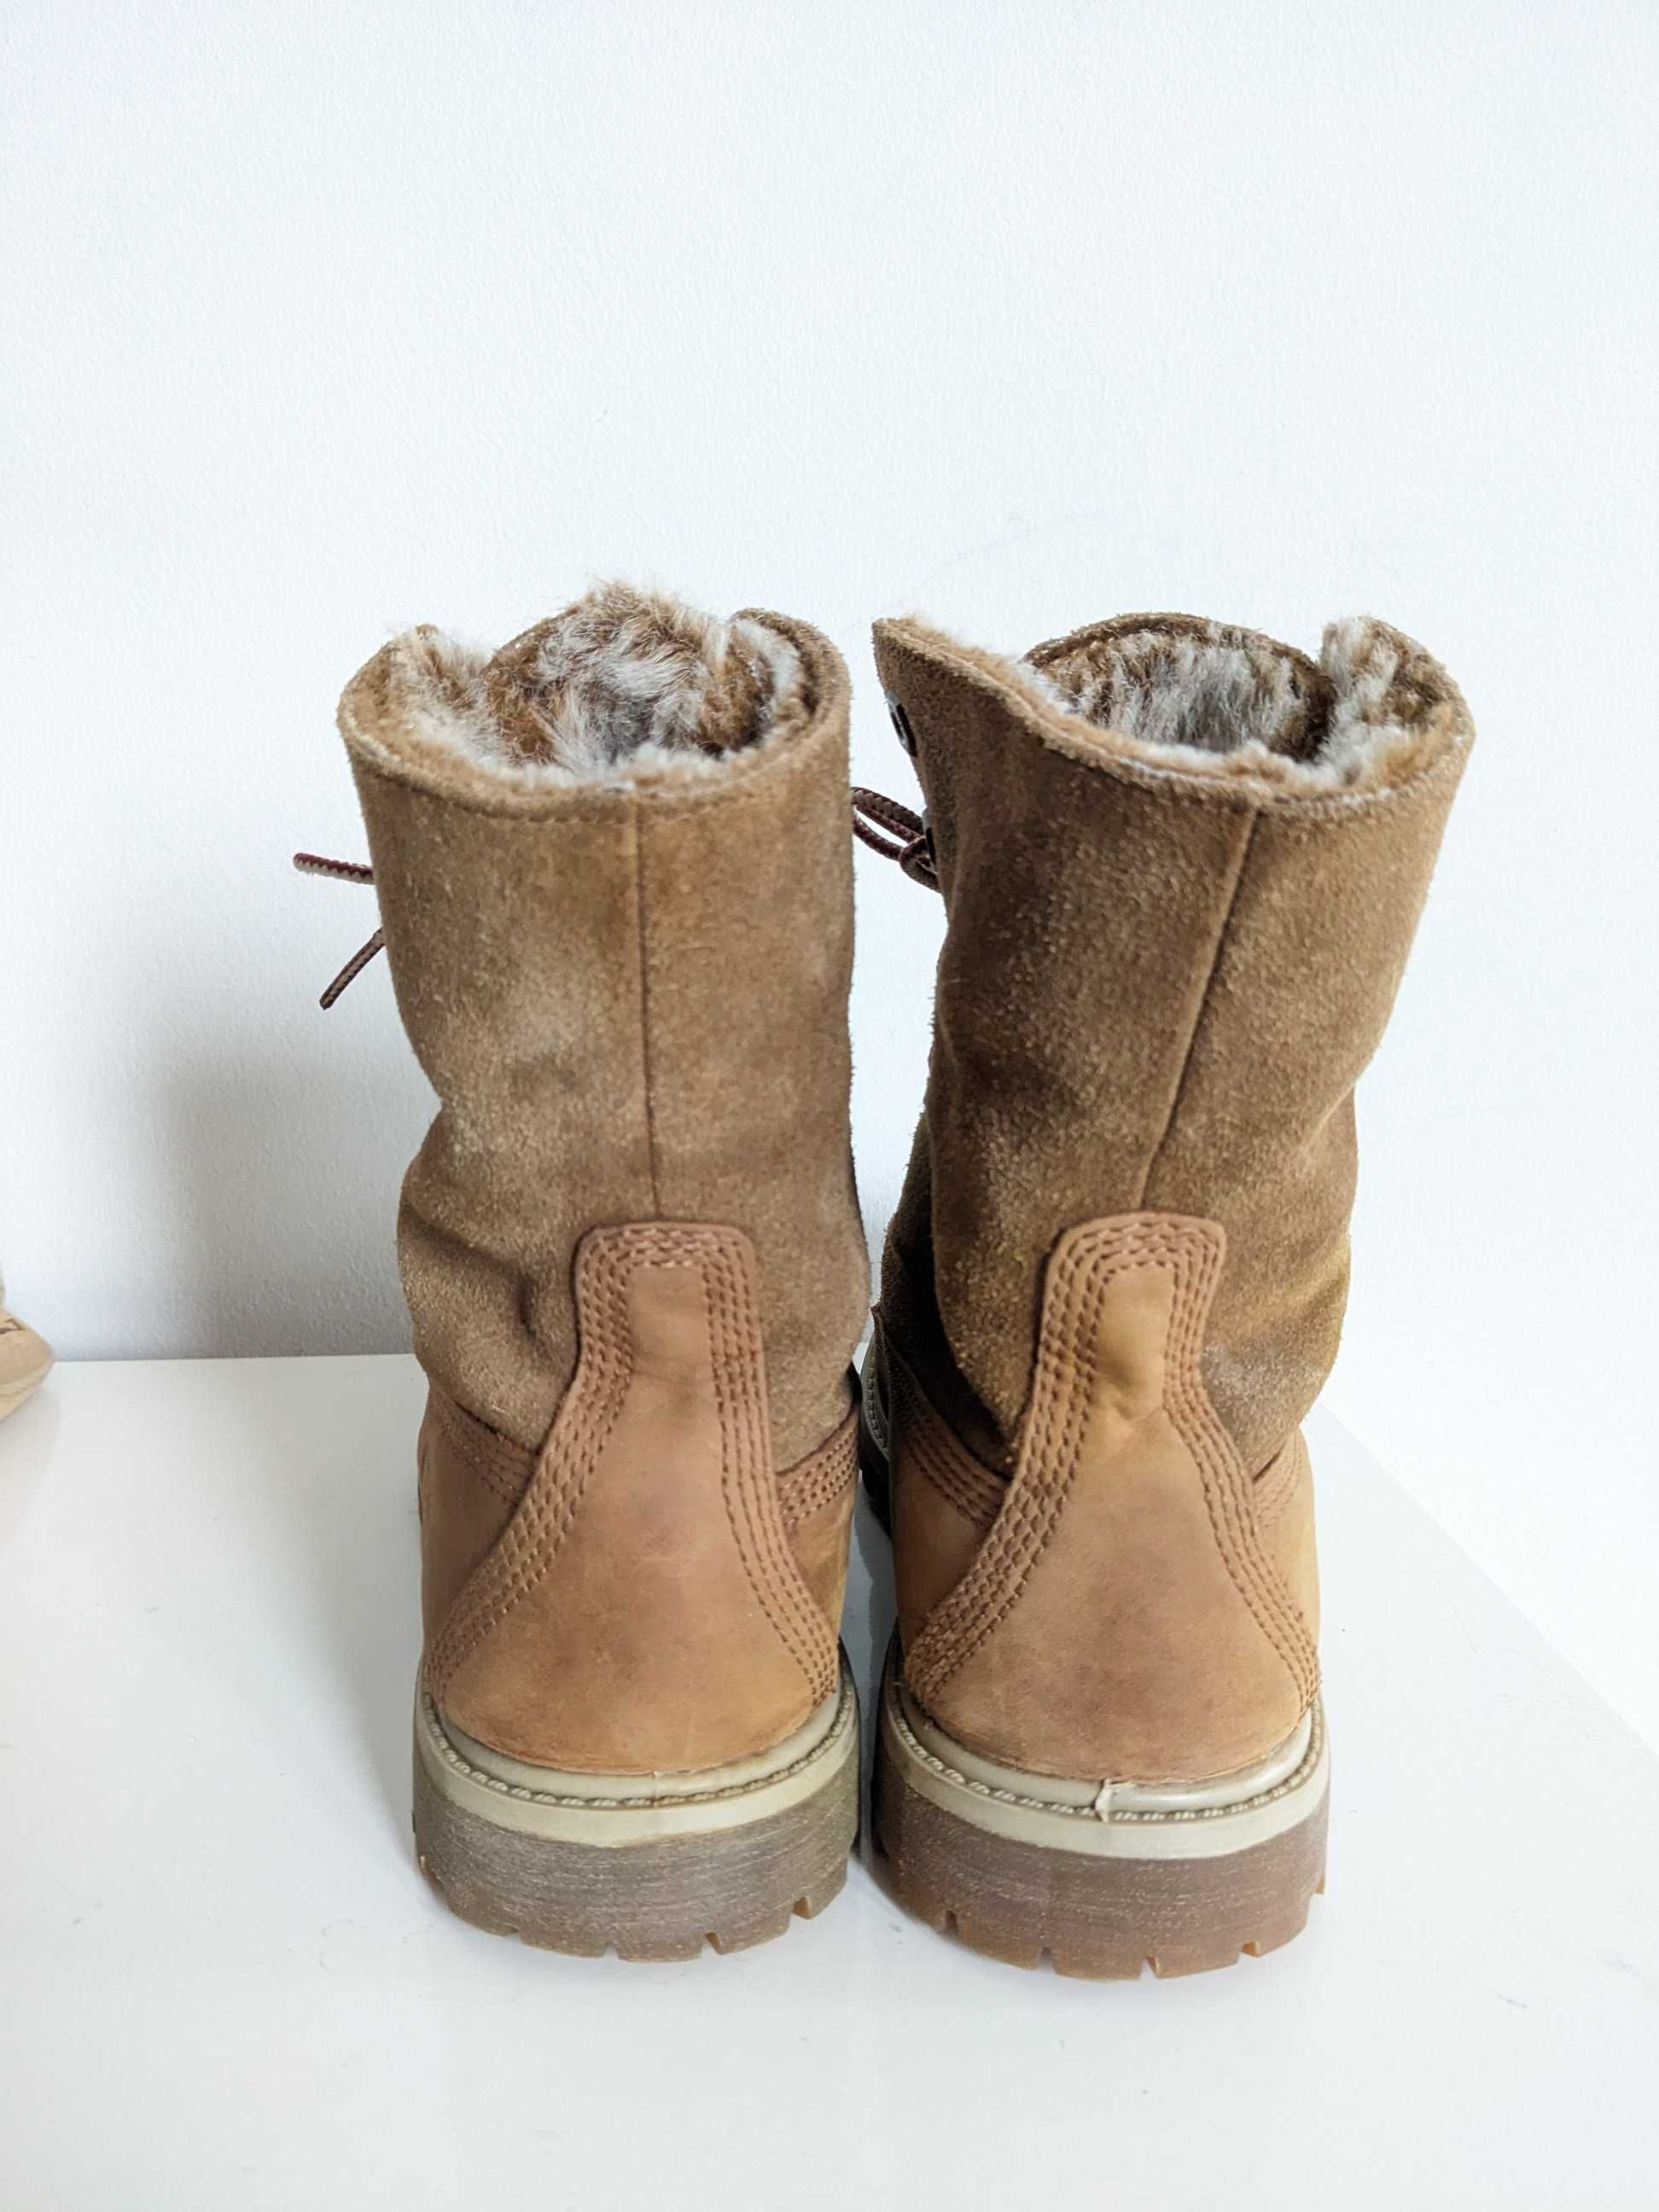 Damskie buty zimowe Timberland Teddy Fleece, rozmiar 37